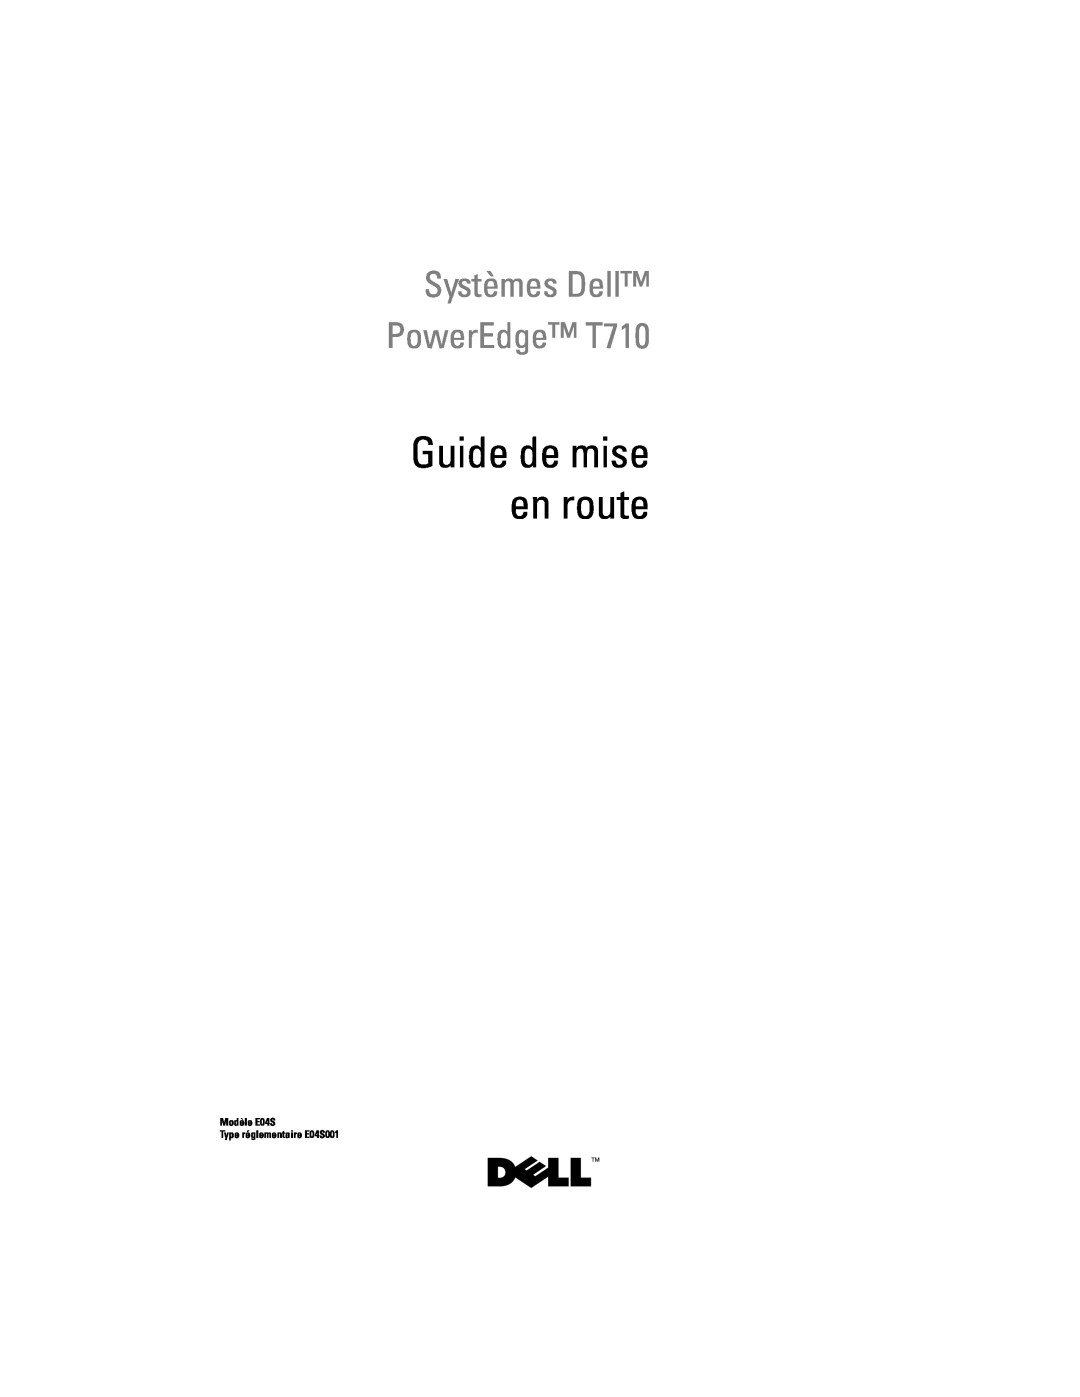 Dell N732H manual Guide de mise en route, Systèmes Dell PowerEdge T710, Modèle E04S Type réglementaire E04S001 